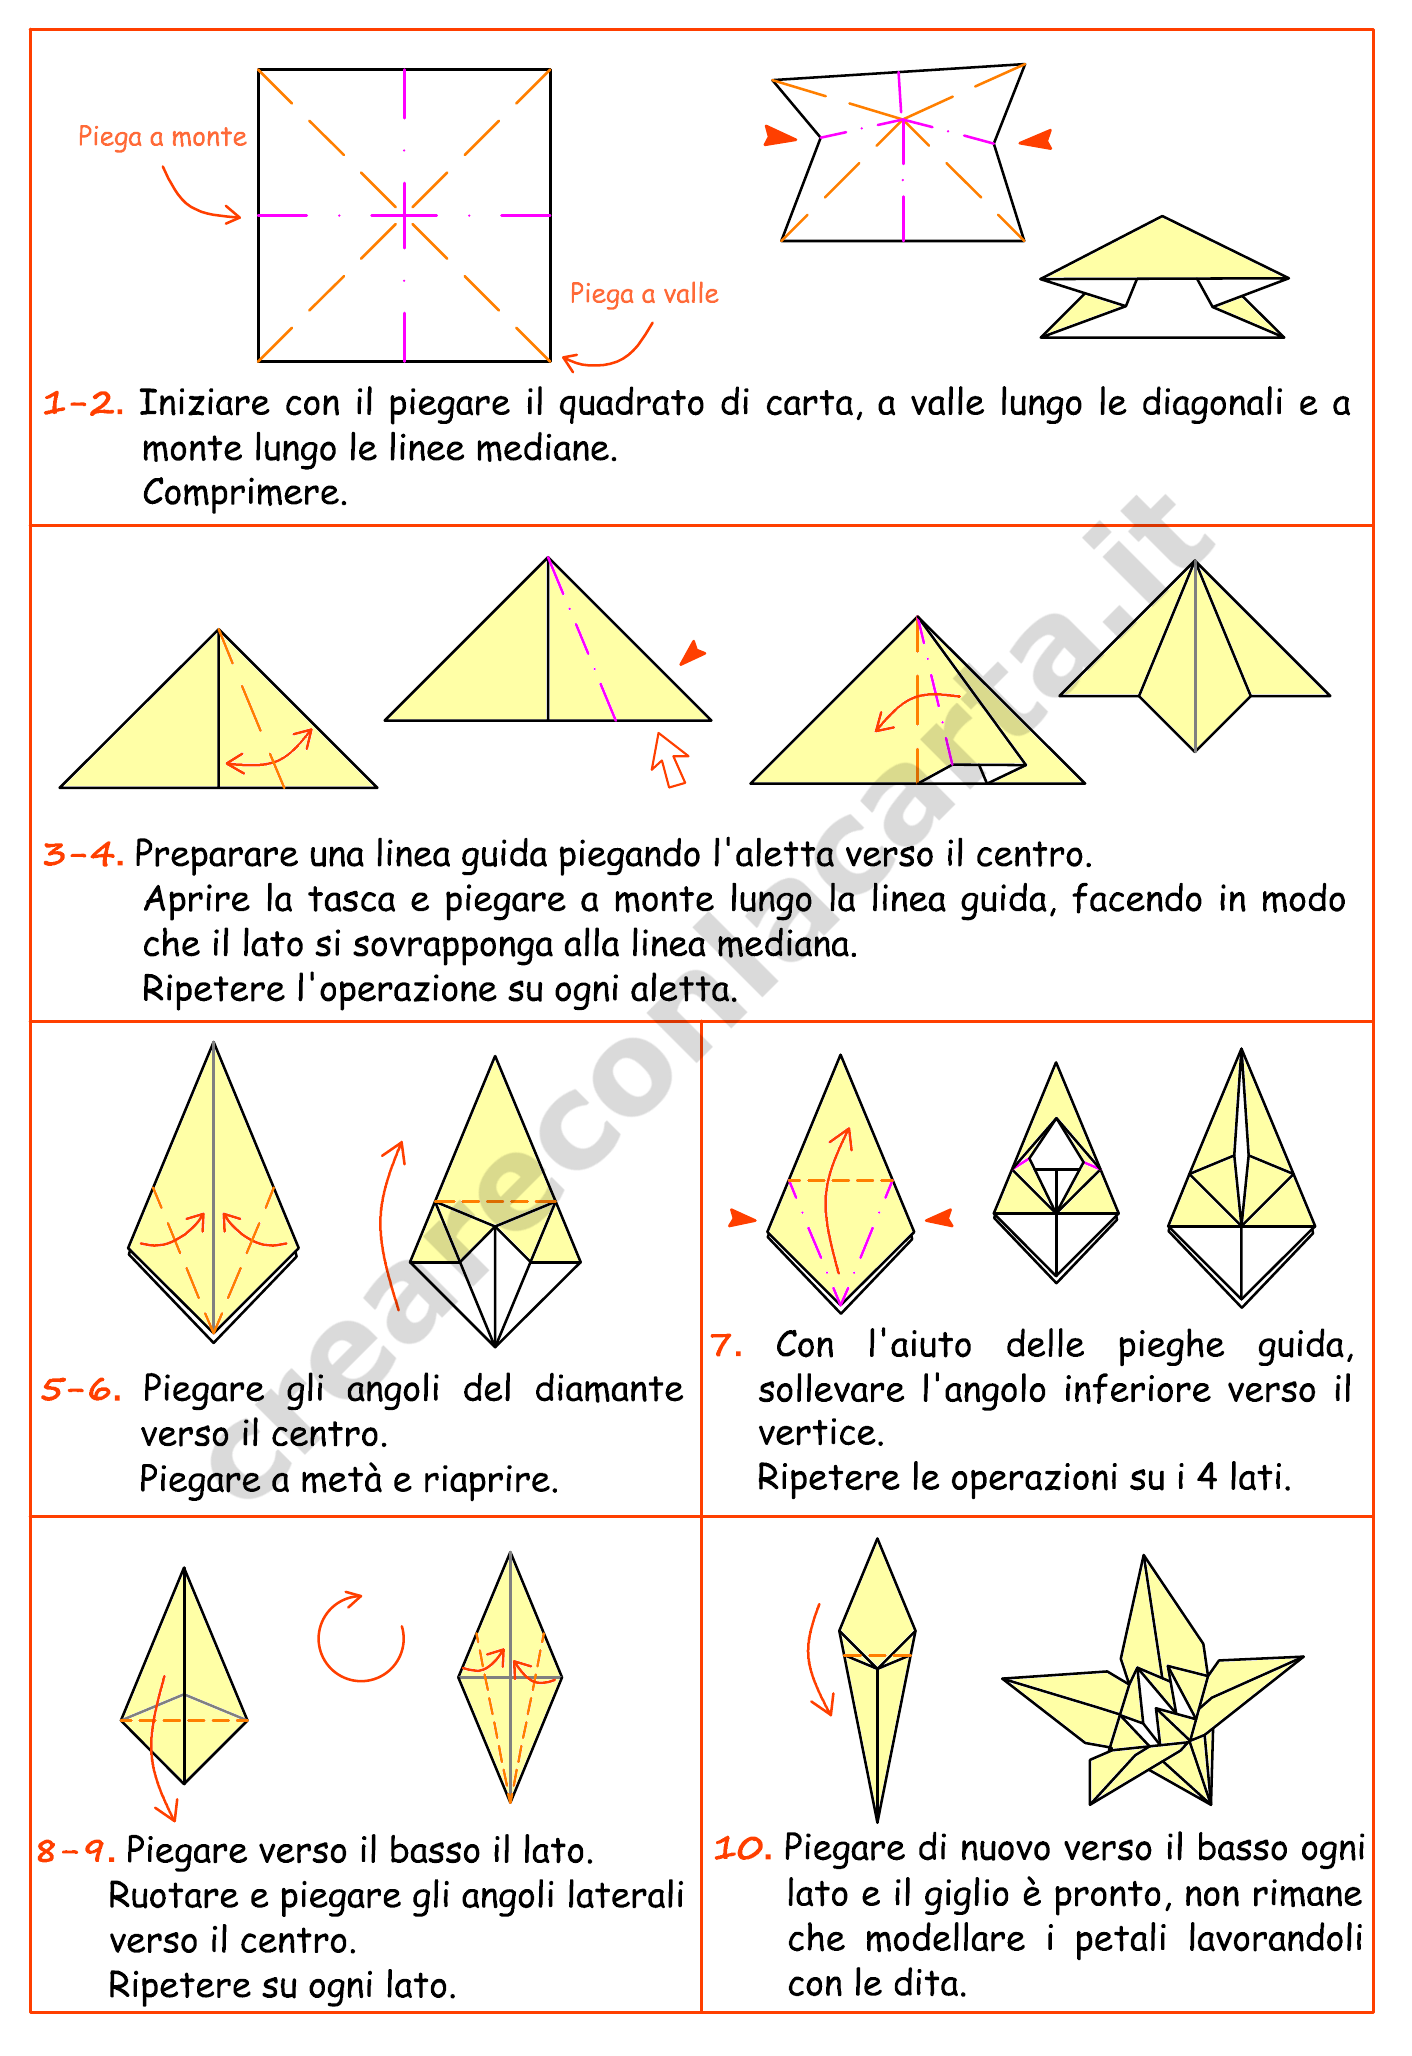 Origami giglio istruzioni per creare con la carta